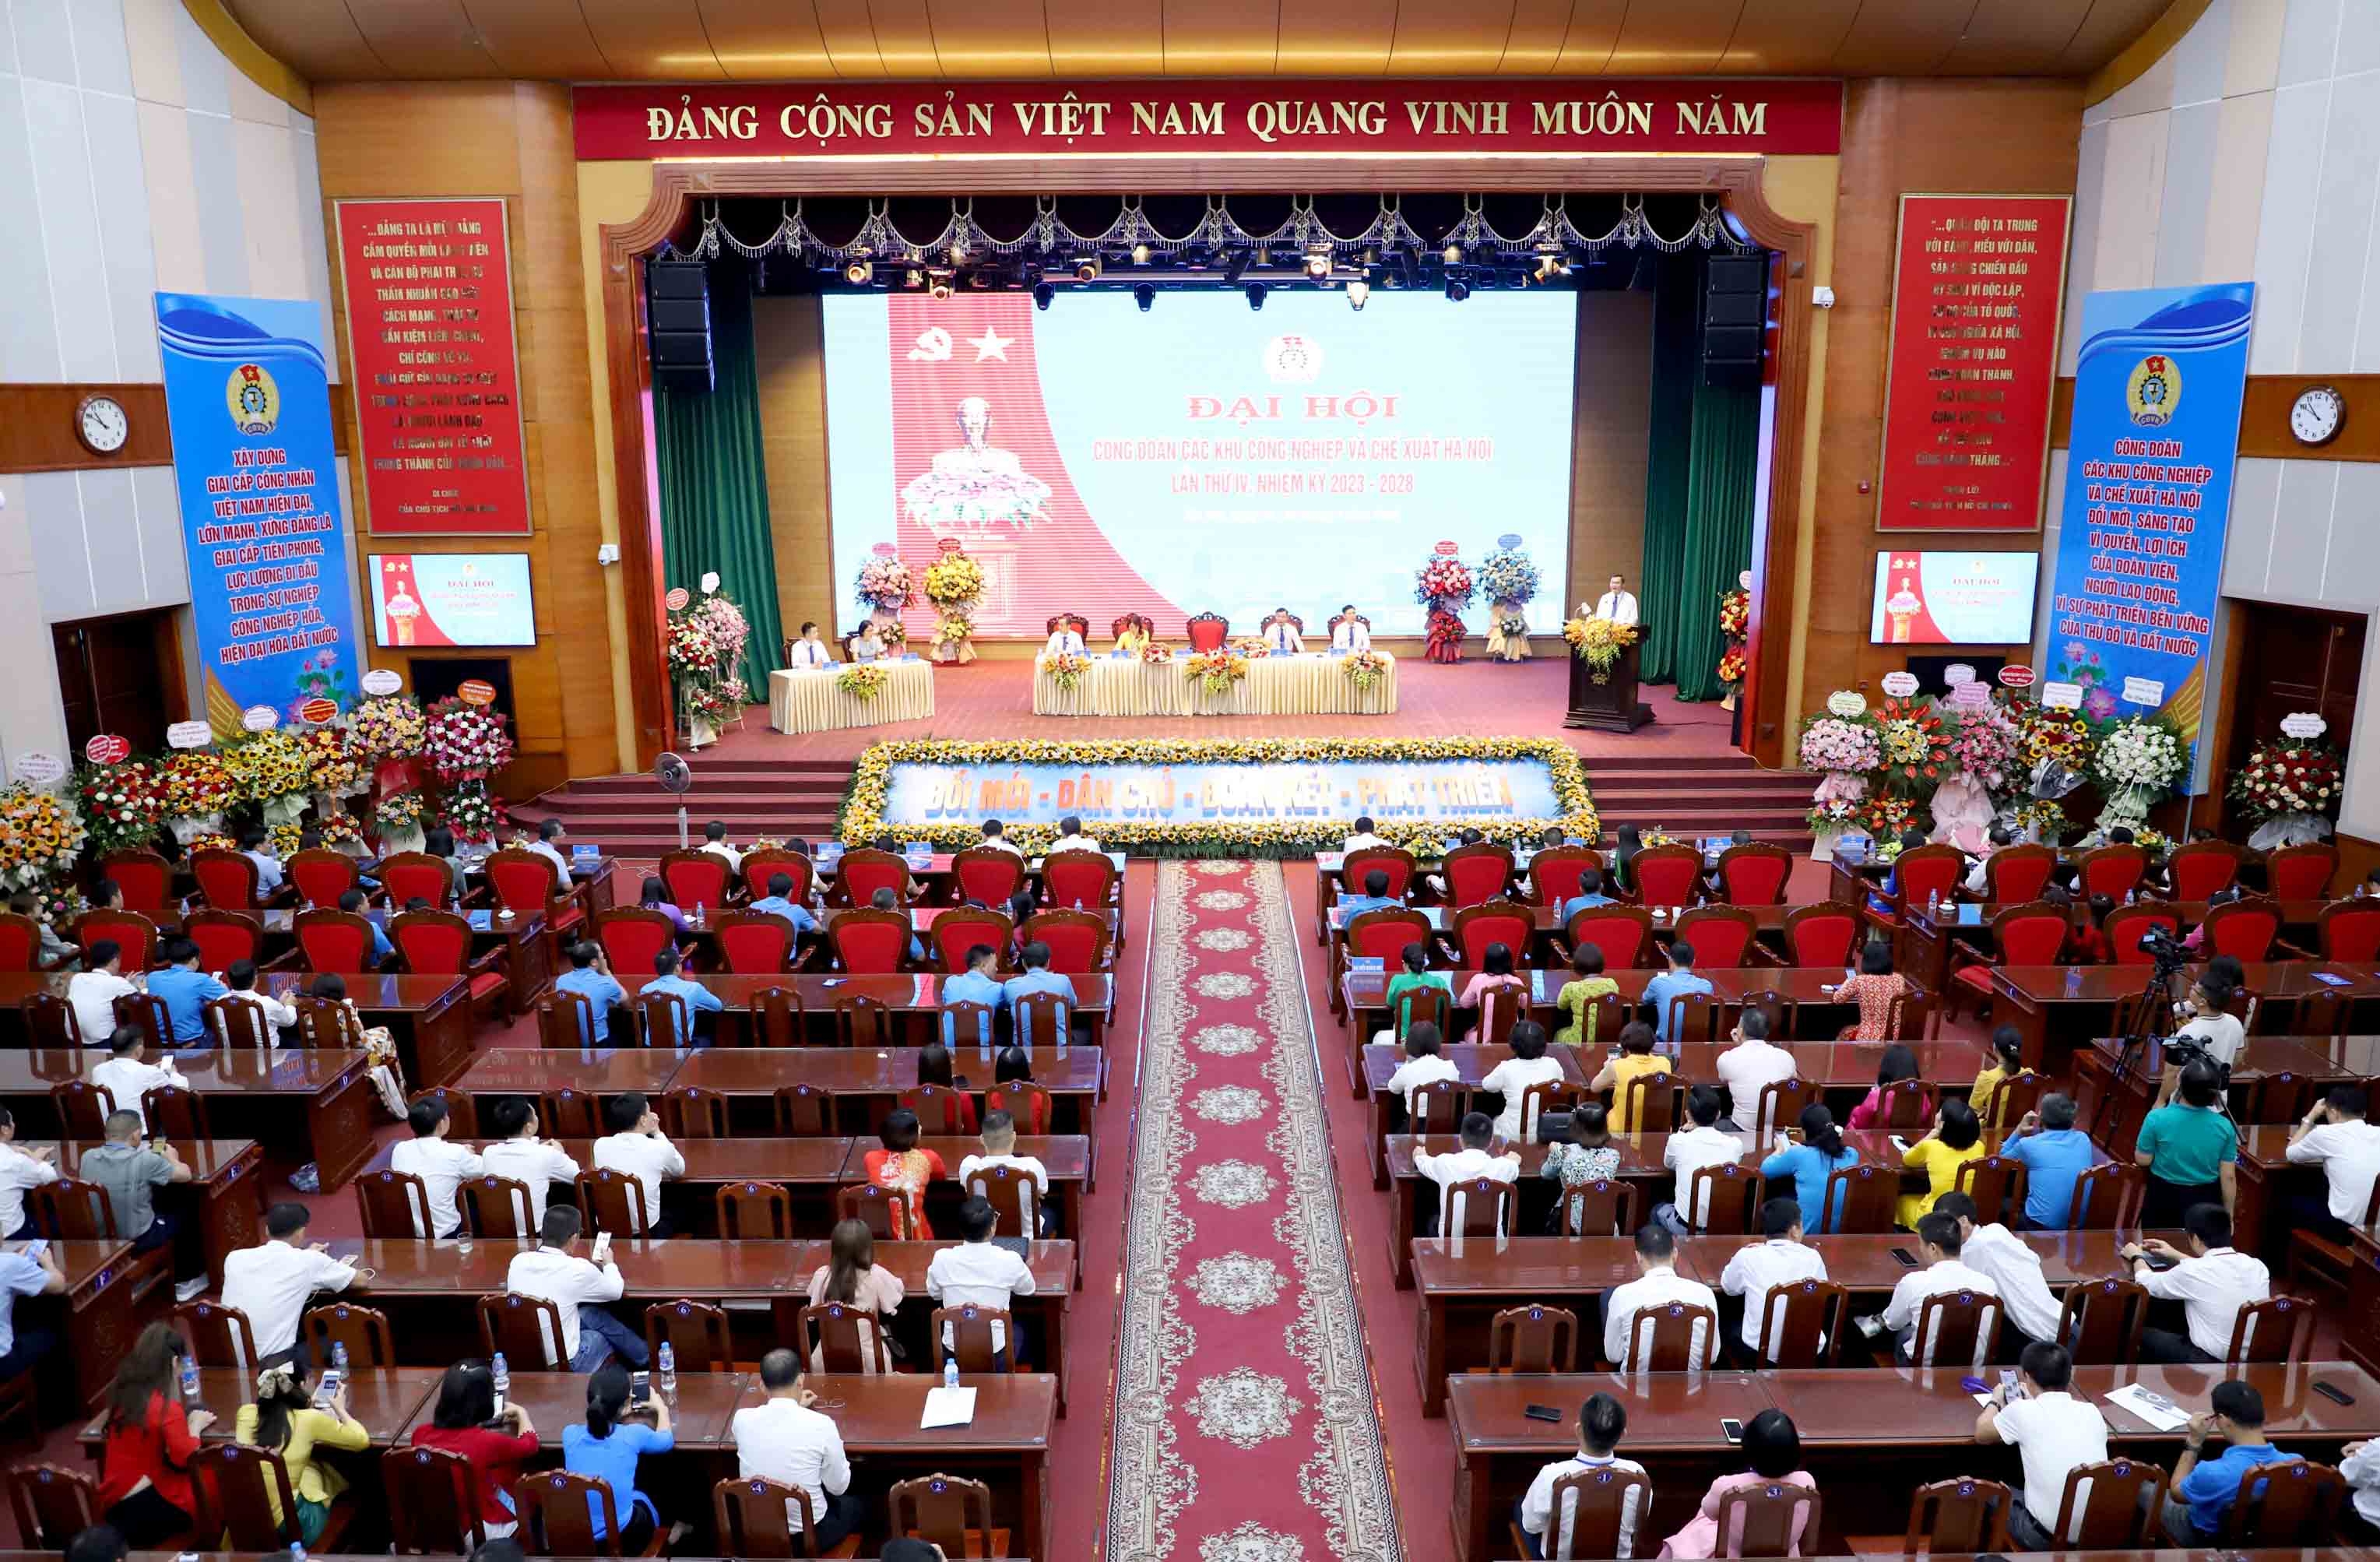 ĐANG TRỰC TUYẾN: Tưng bừng ngày hội lớn của CNVCLĐ các Khu công nghiệp và chế xuất Hà Nội